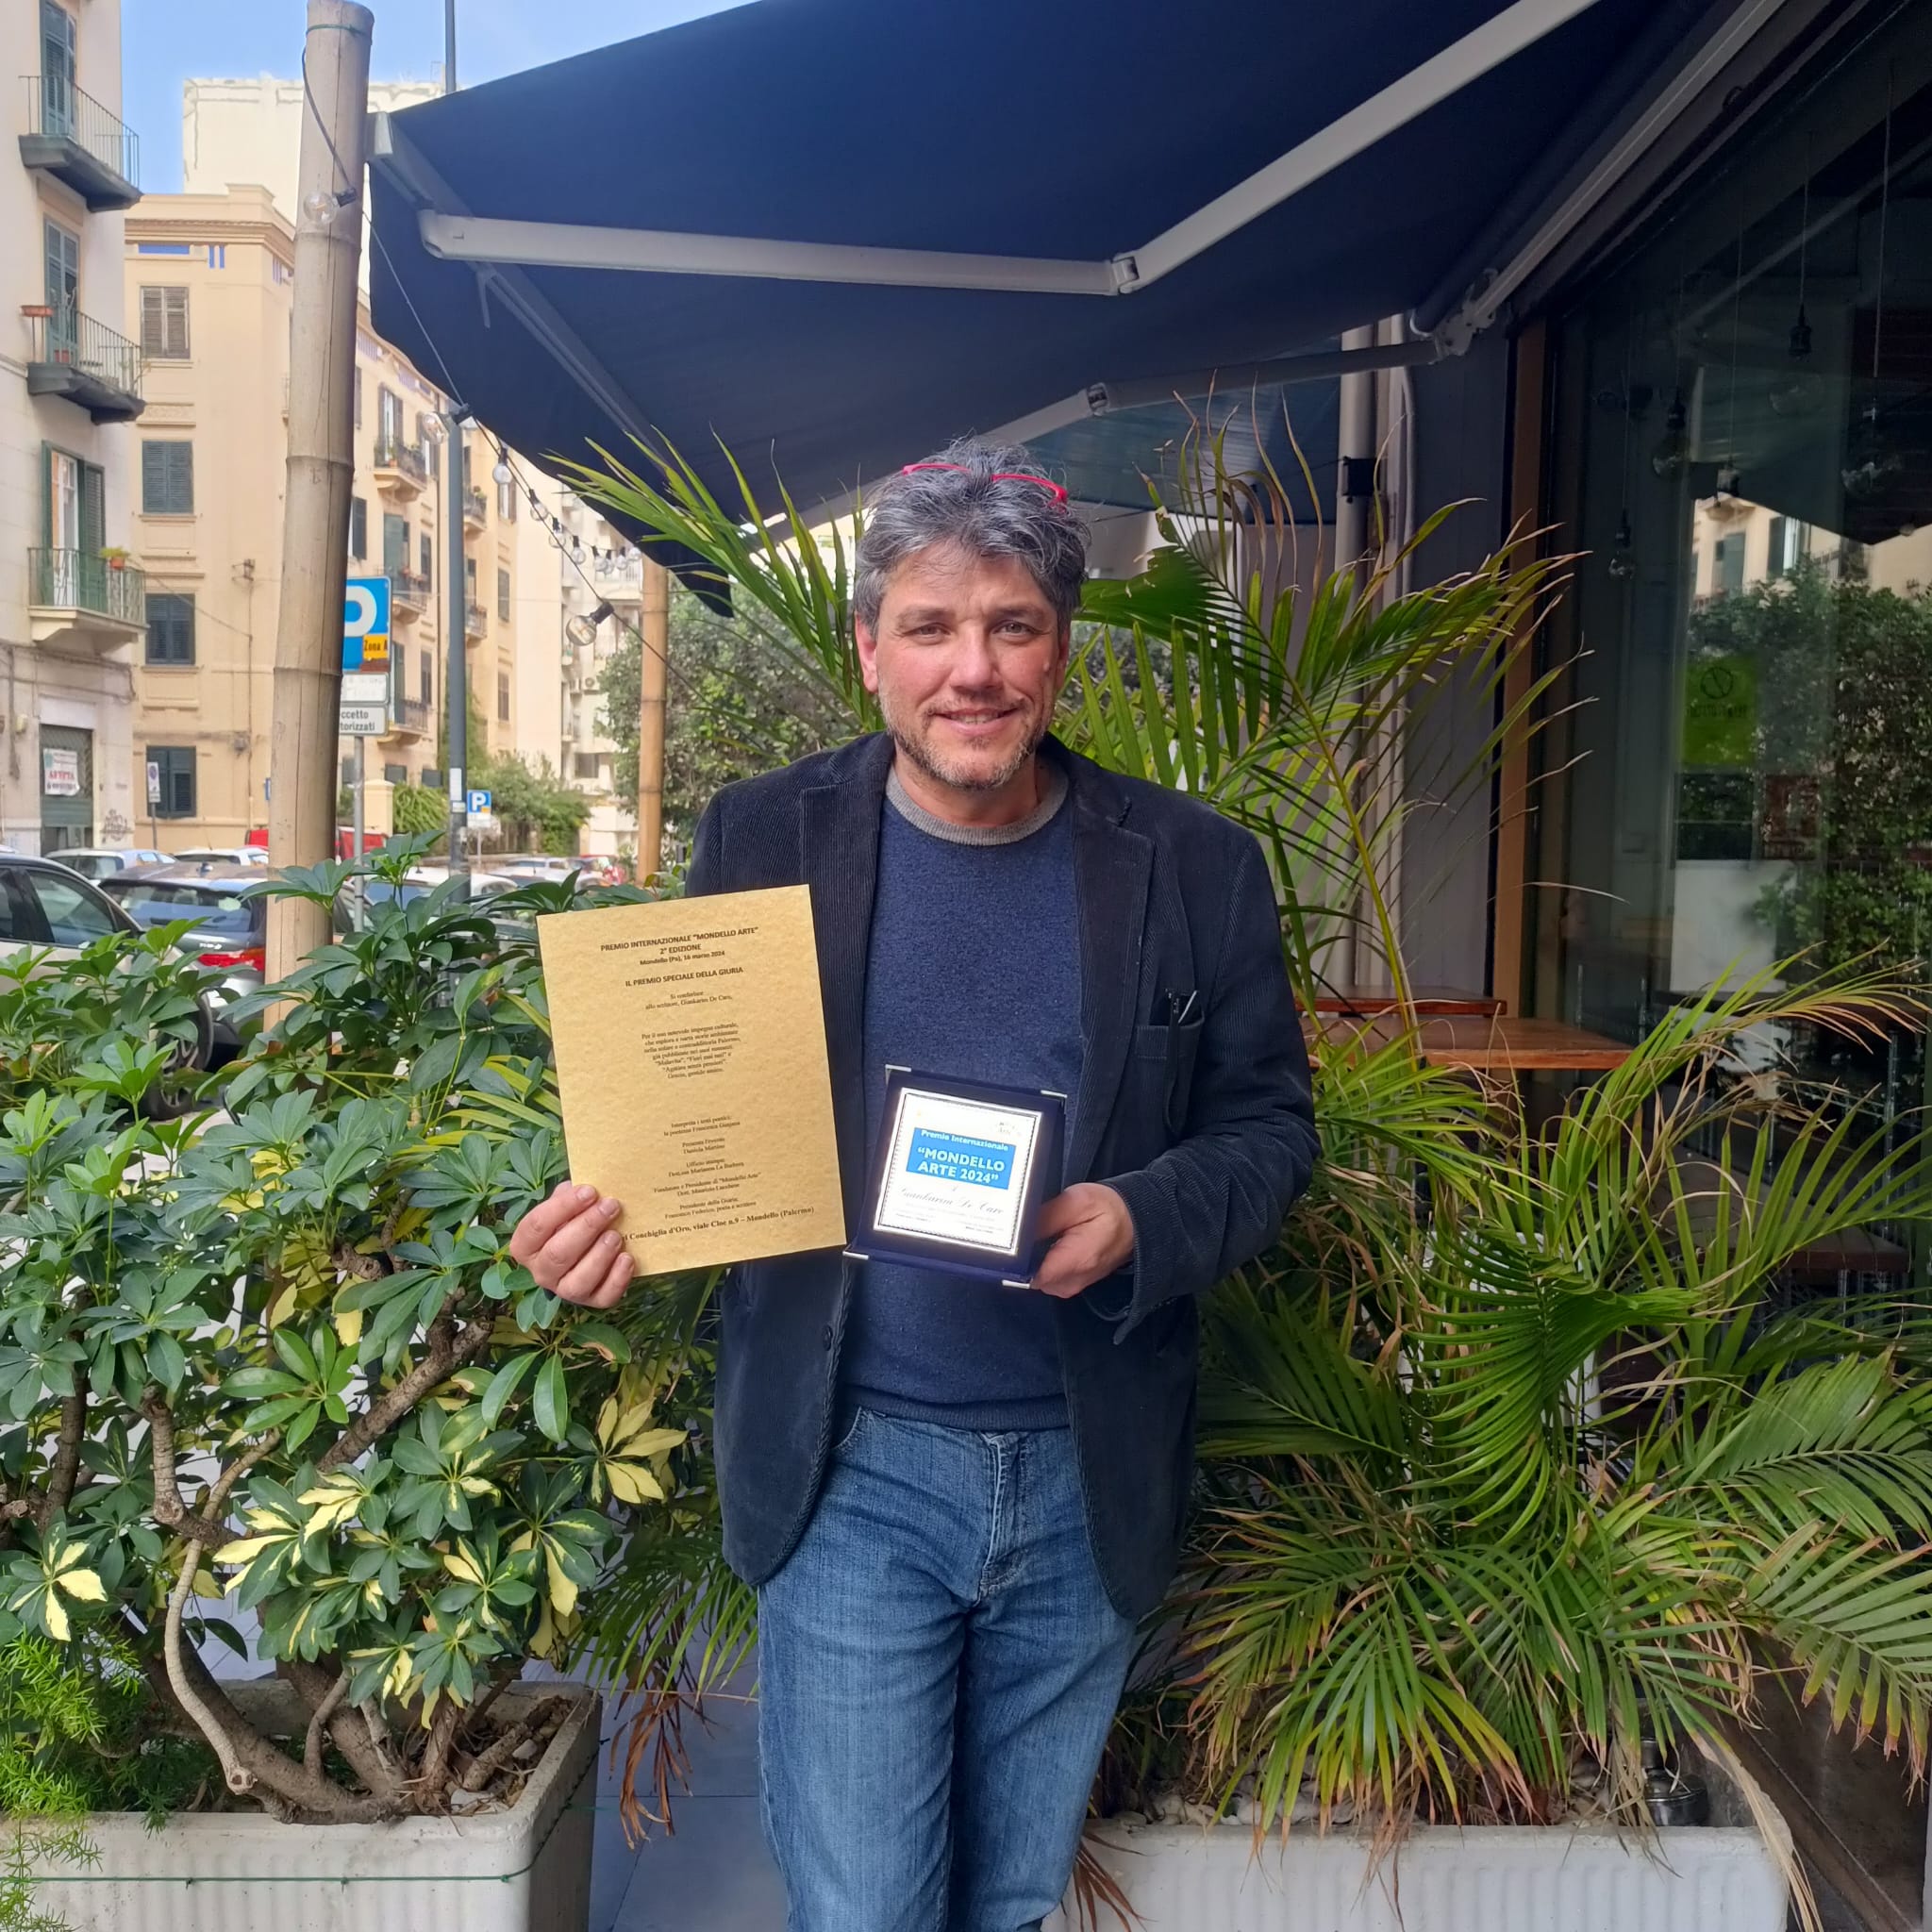 Giankarim De Caro presenta il suo ultimo romanzo “Agatina senza pensieri” di Navarra Editore Iniziativa a cura dell’associazione “Amarsi” in programma a Palermo giovedì 11 aprile